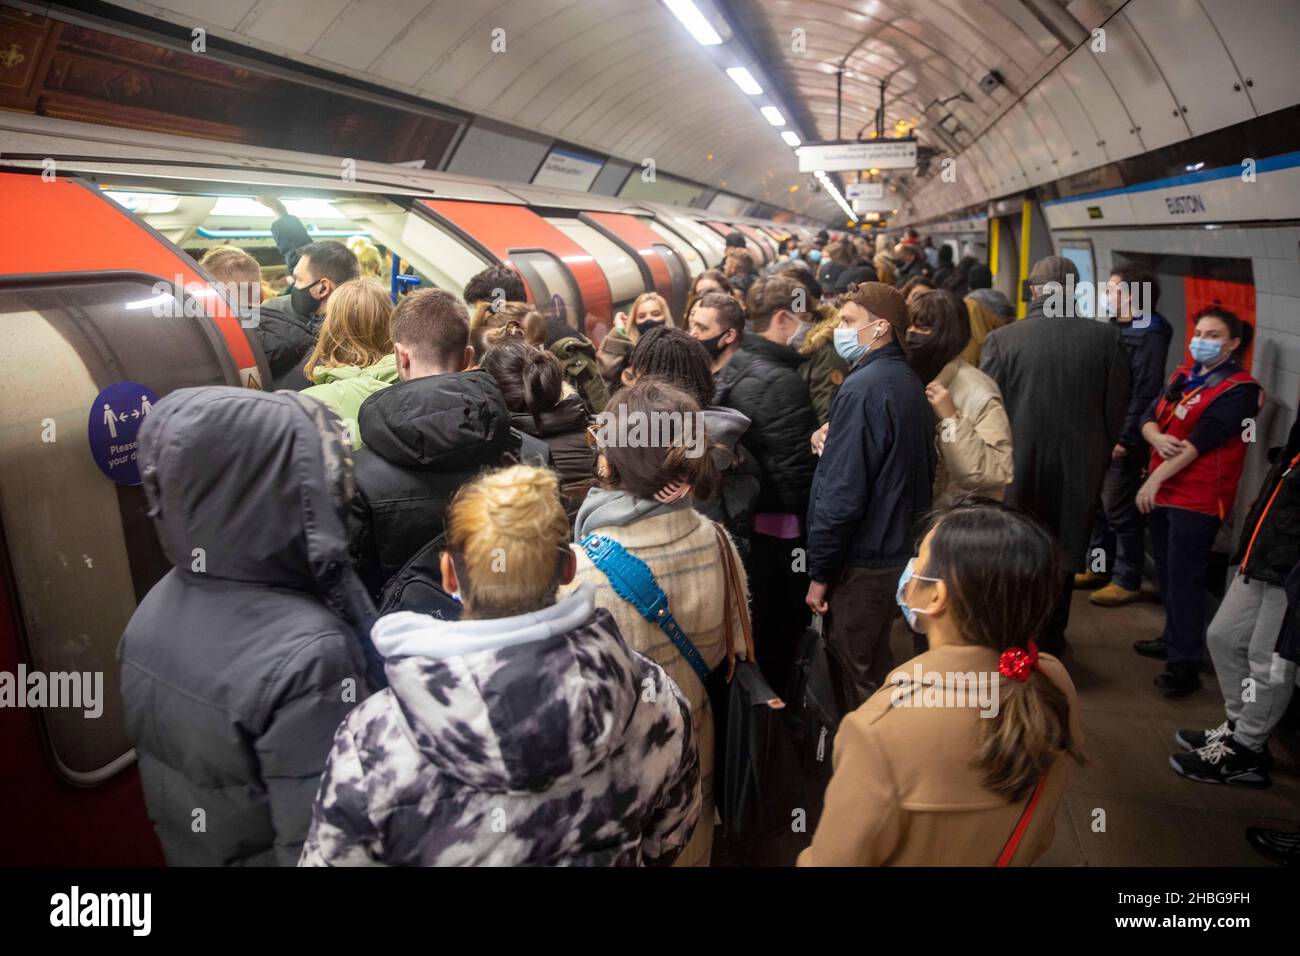 pic shows: Les travailleurs de la grève souterraine de Londres ont causé un énorme surpeuplement sur les plates-formes à euston et Oxford Circus aujourd'hui samedi 18.12.21 malgré Banque D'Images